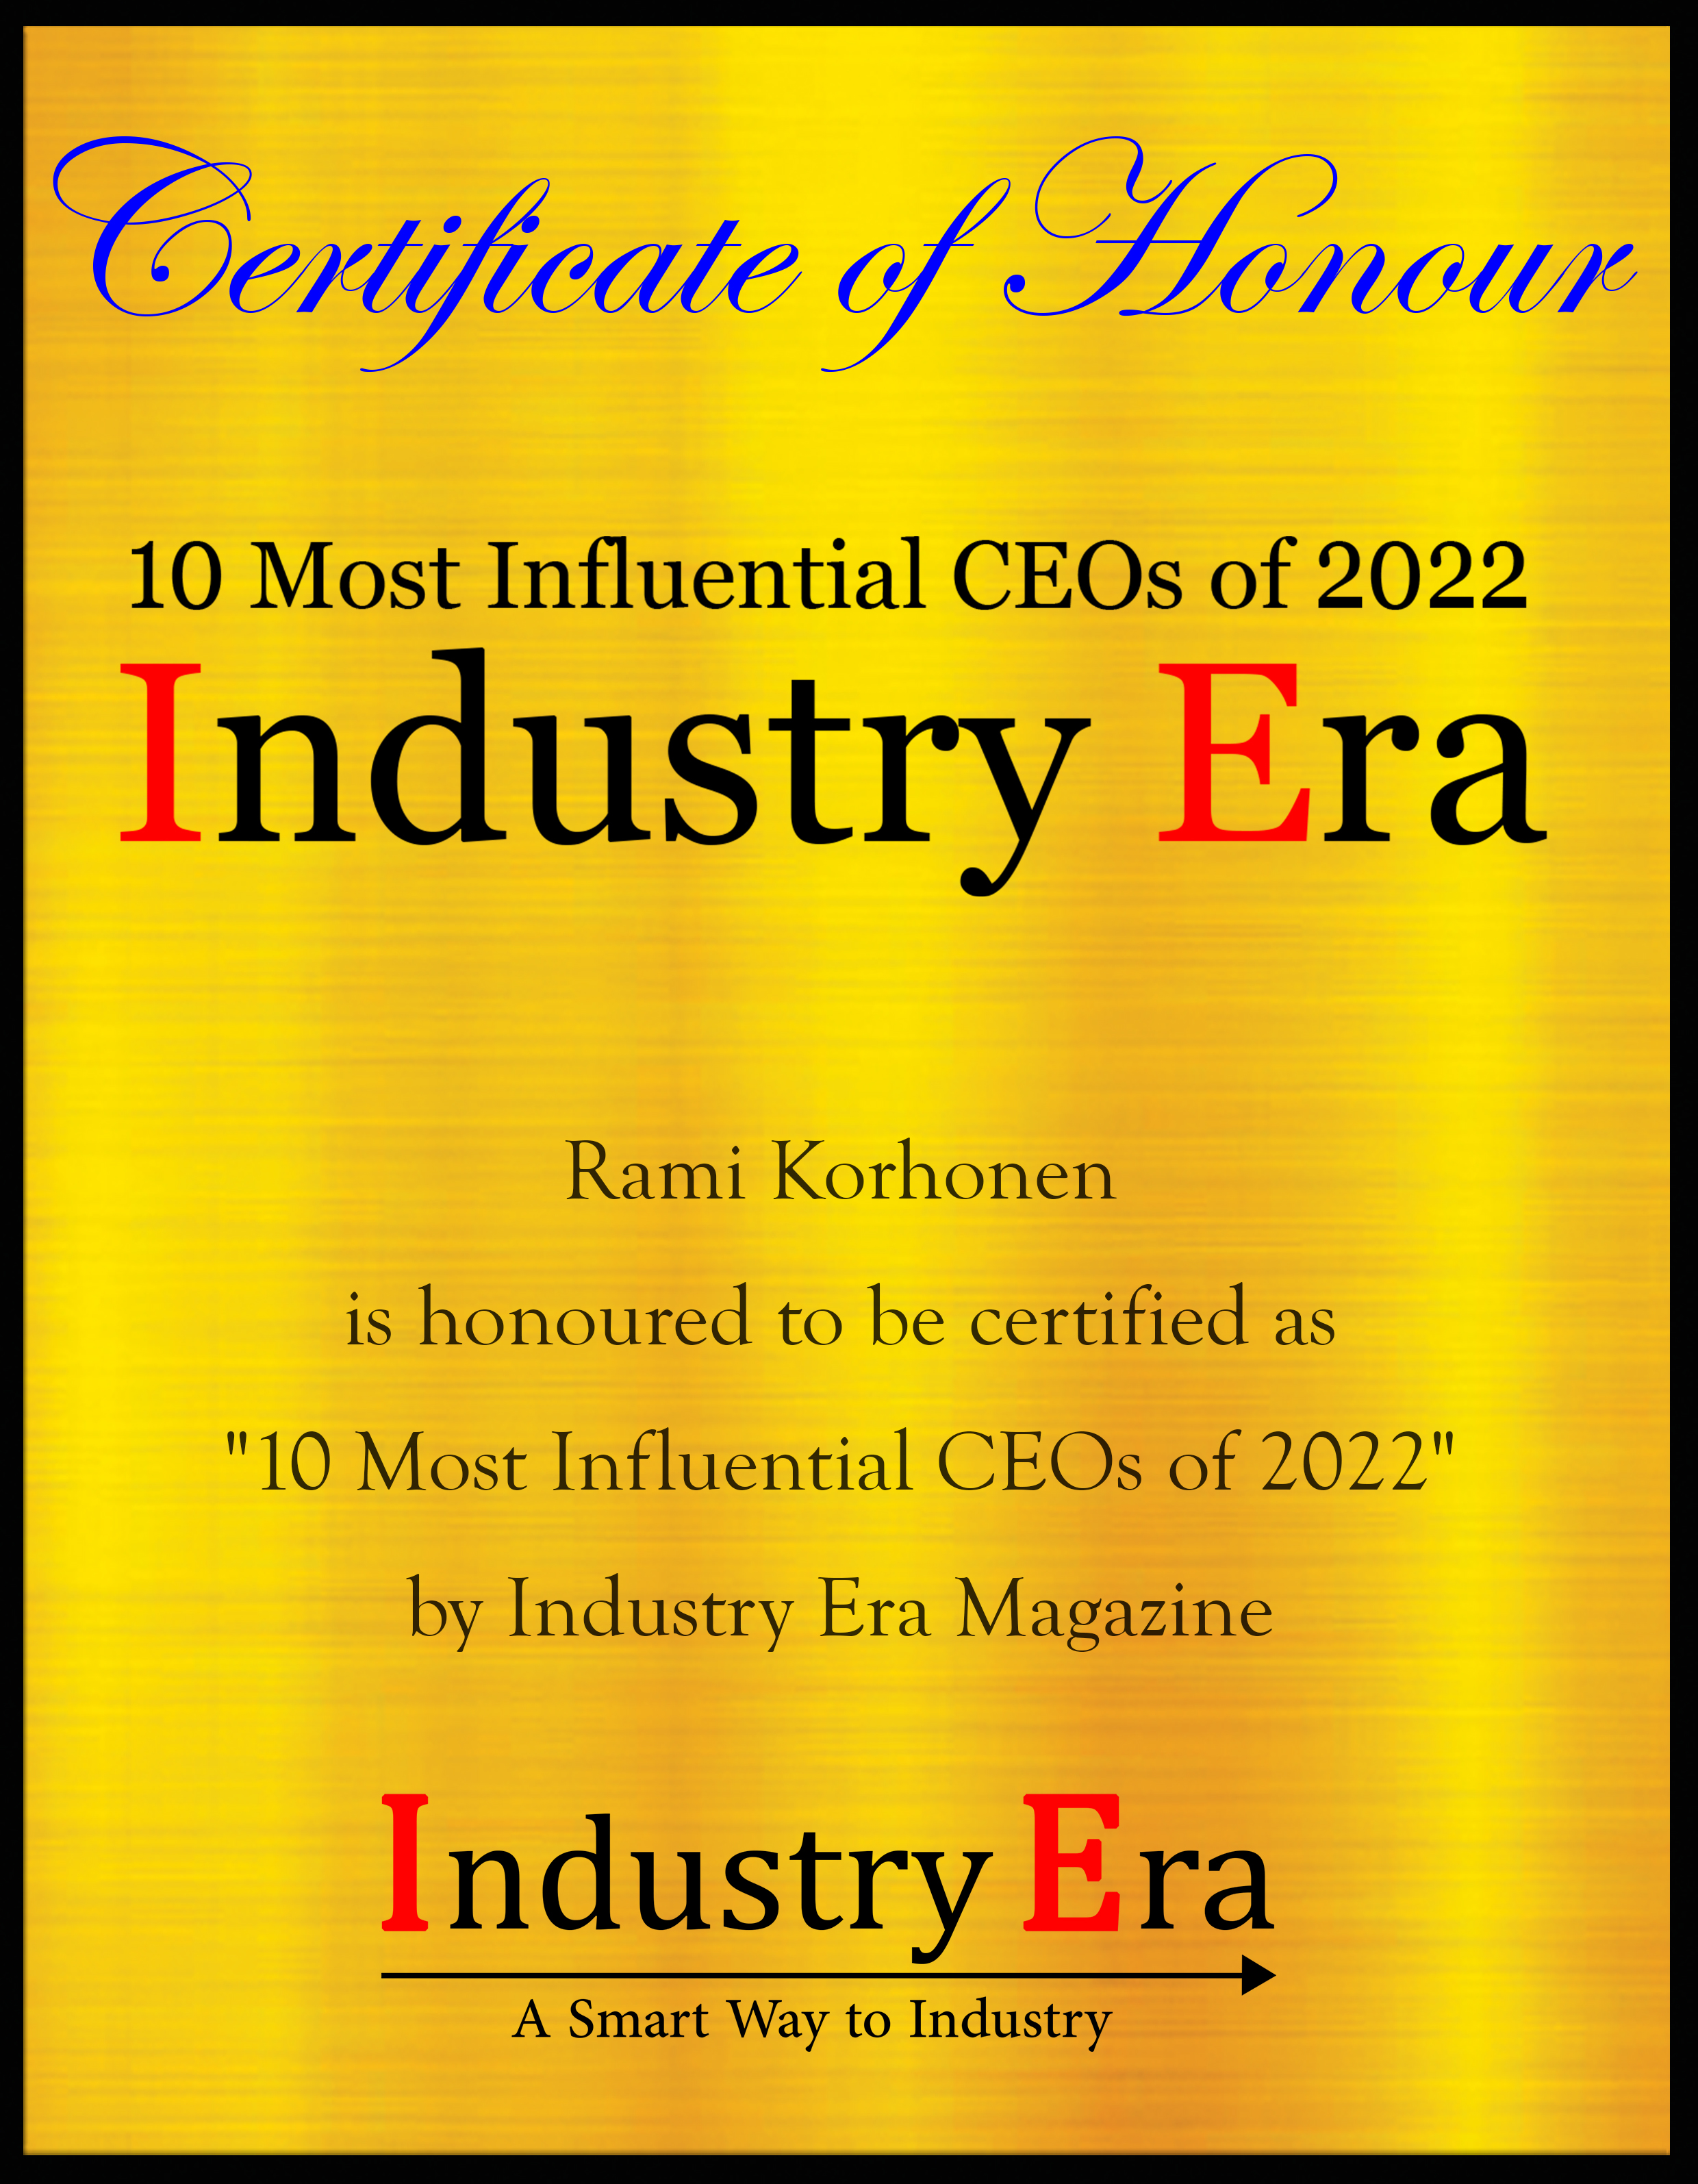 Rami Korhonen, CEO of Oivan Certificate